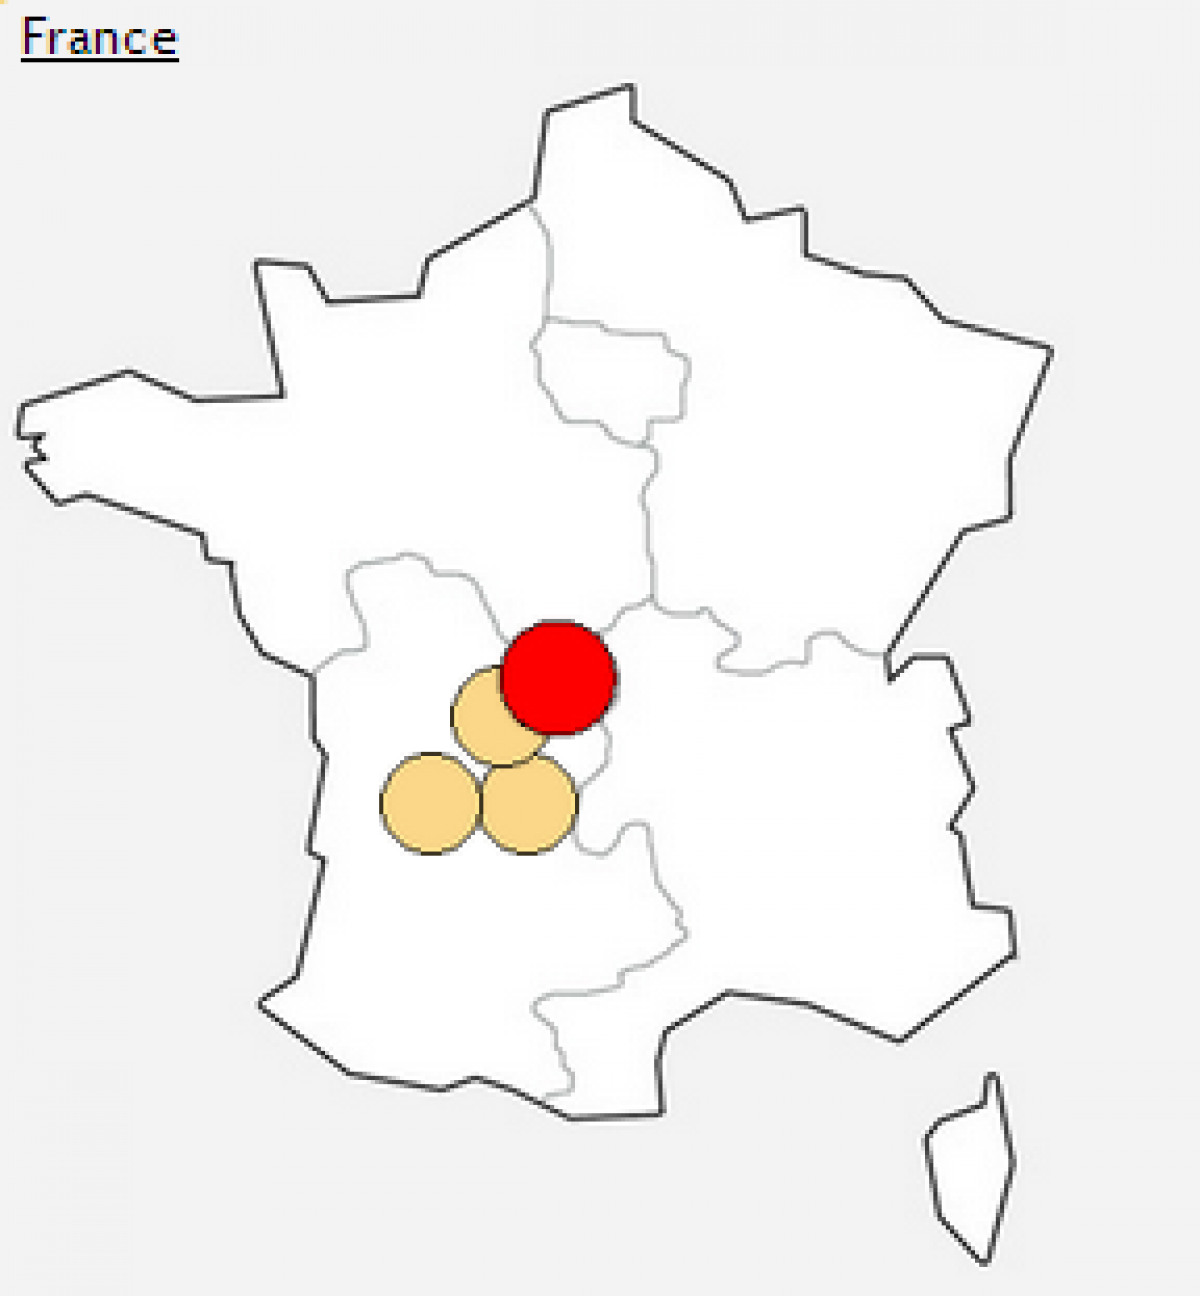 Free : incidents en cours dans le Limousin, Aquitaine et Midi-Pyrénées